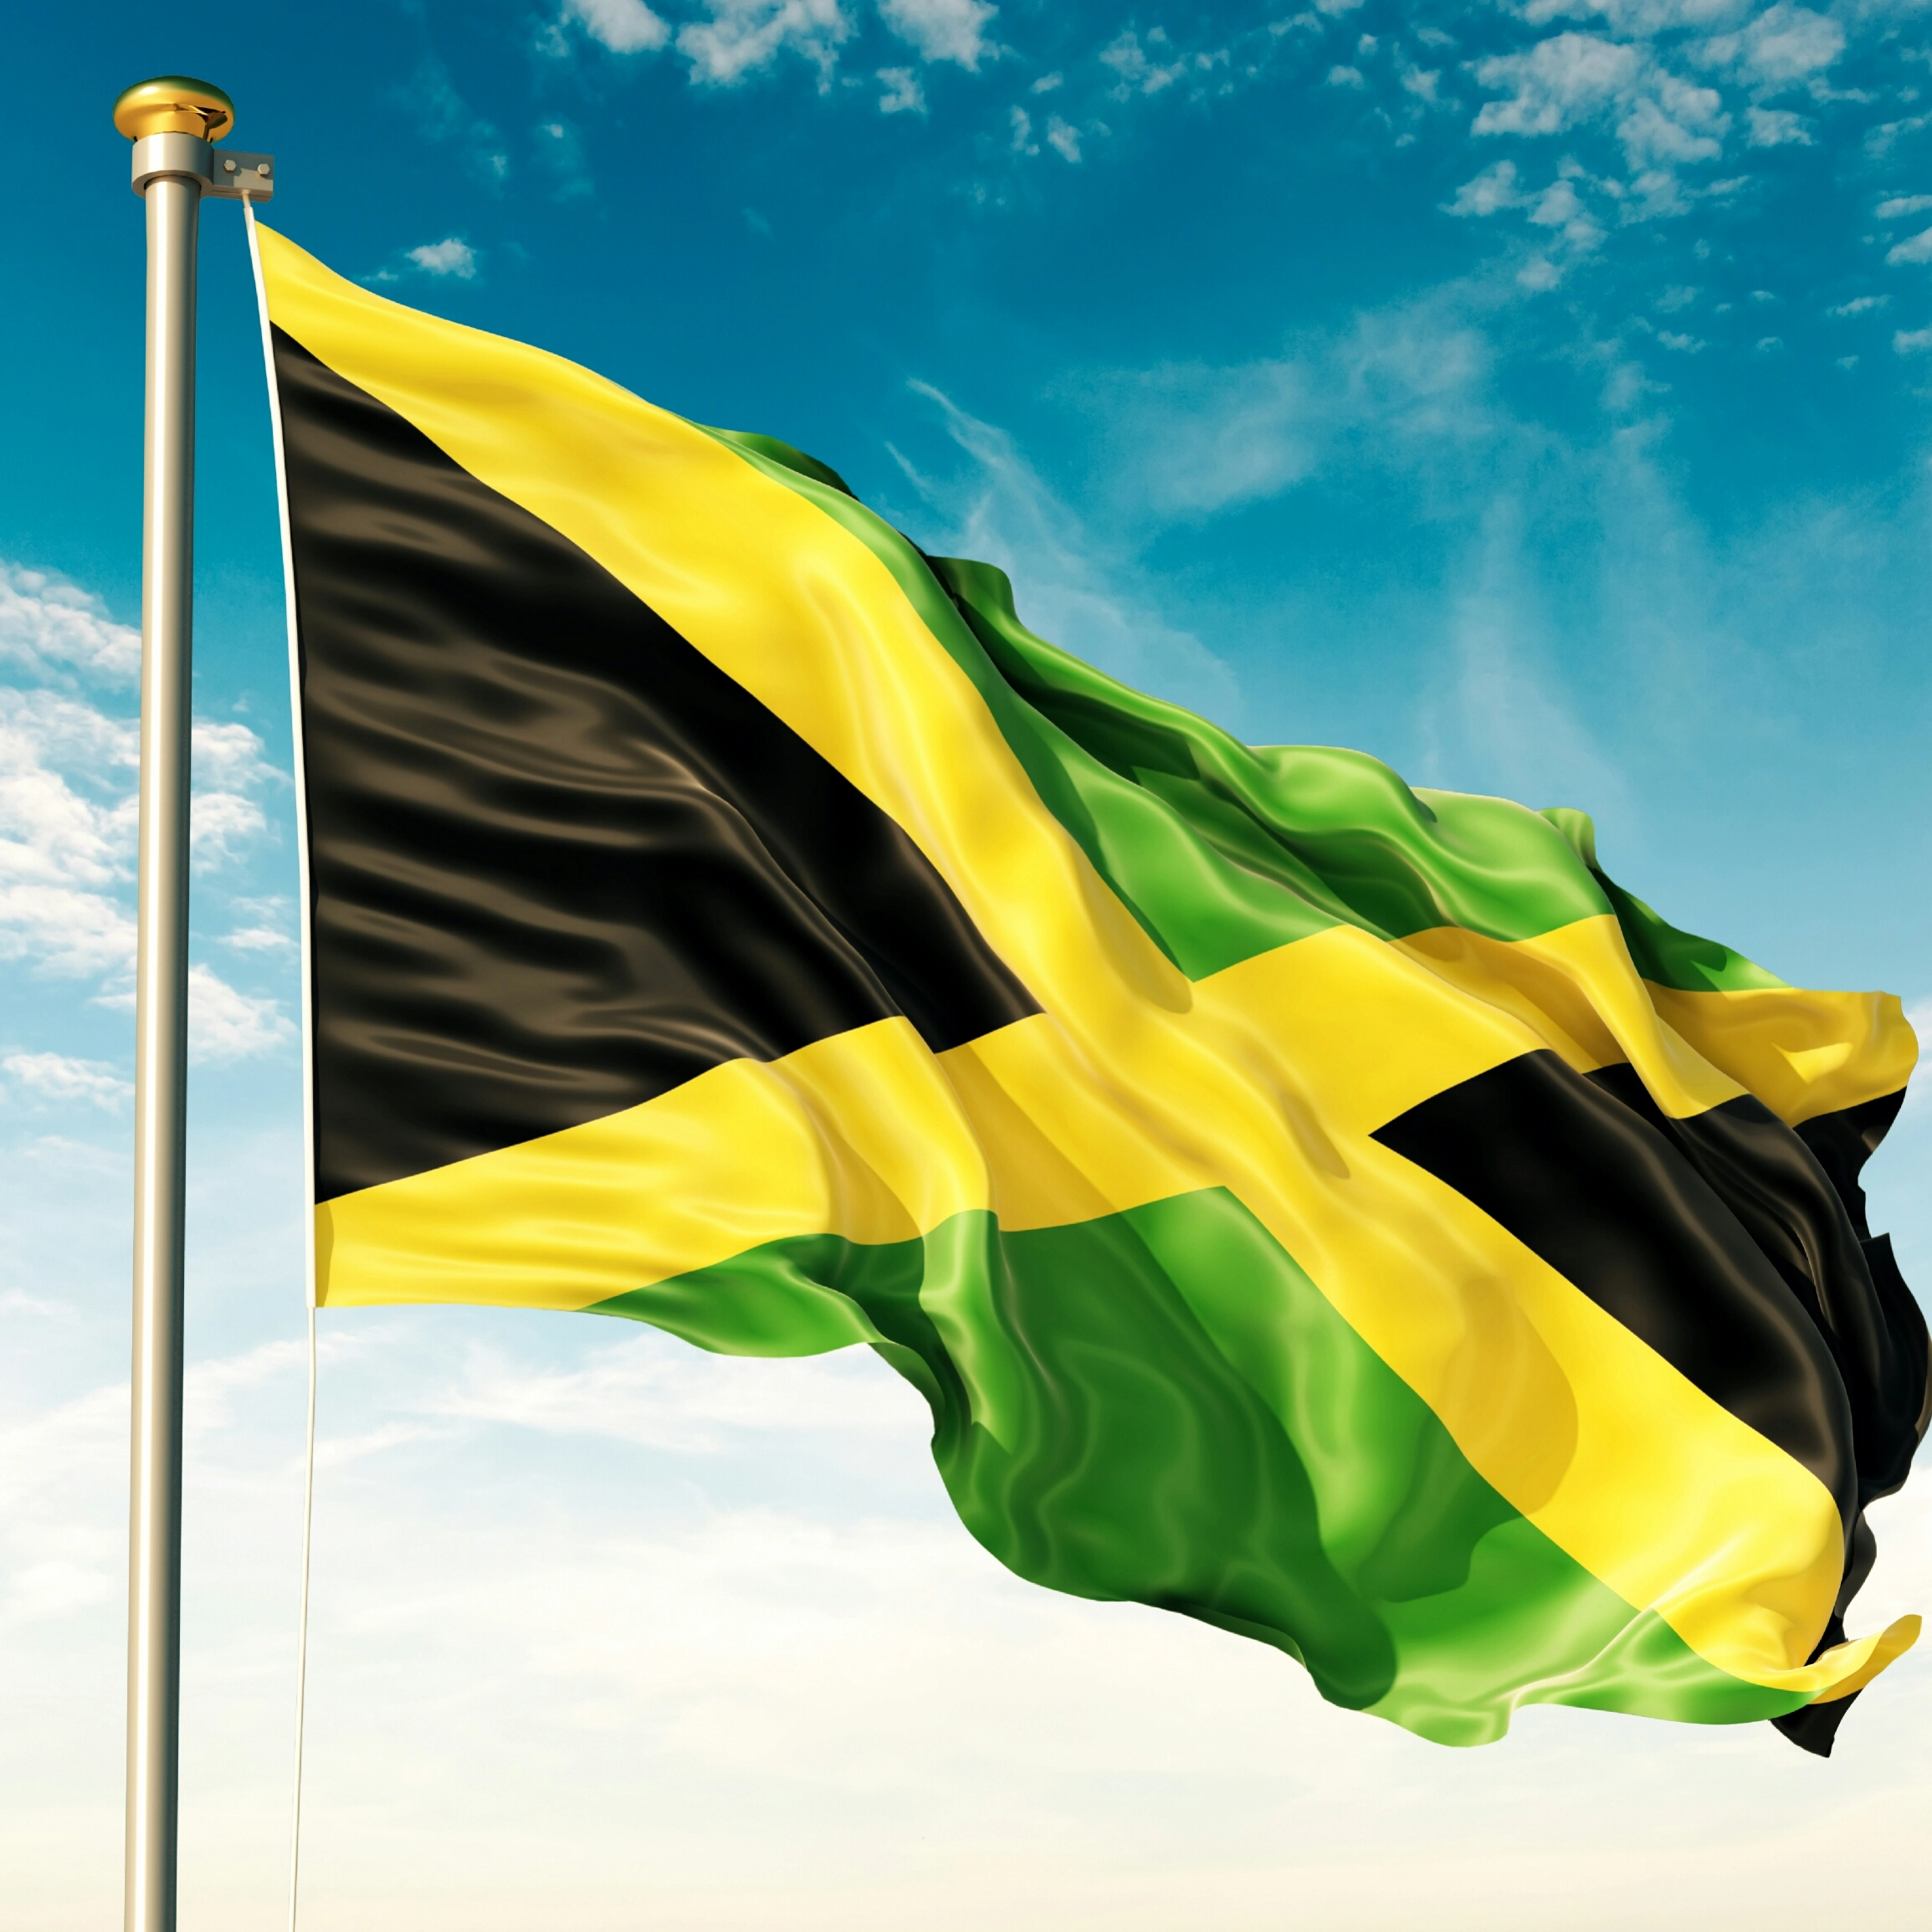 牙买加证券交易所计划发行安全代币